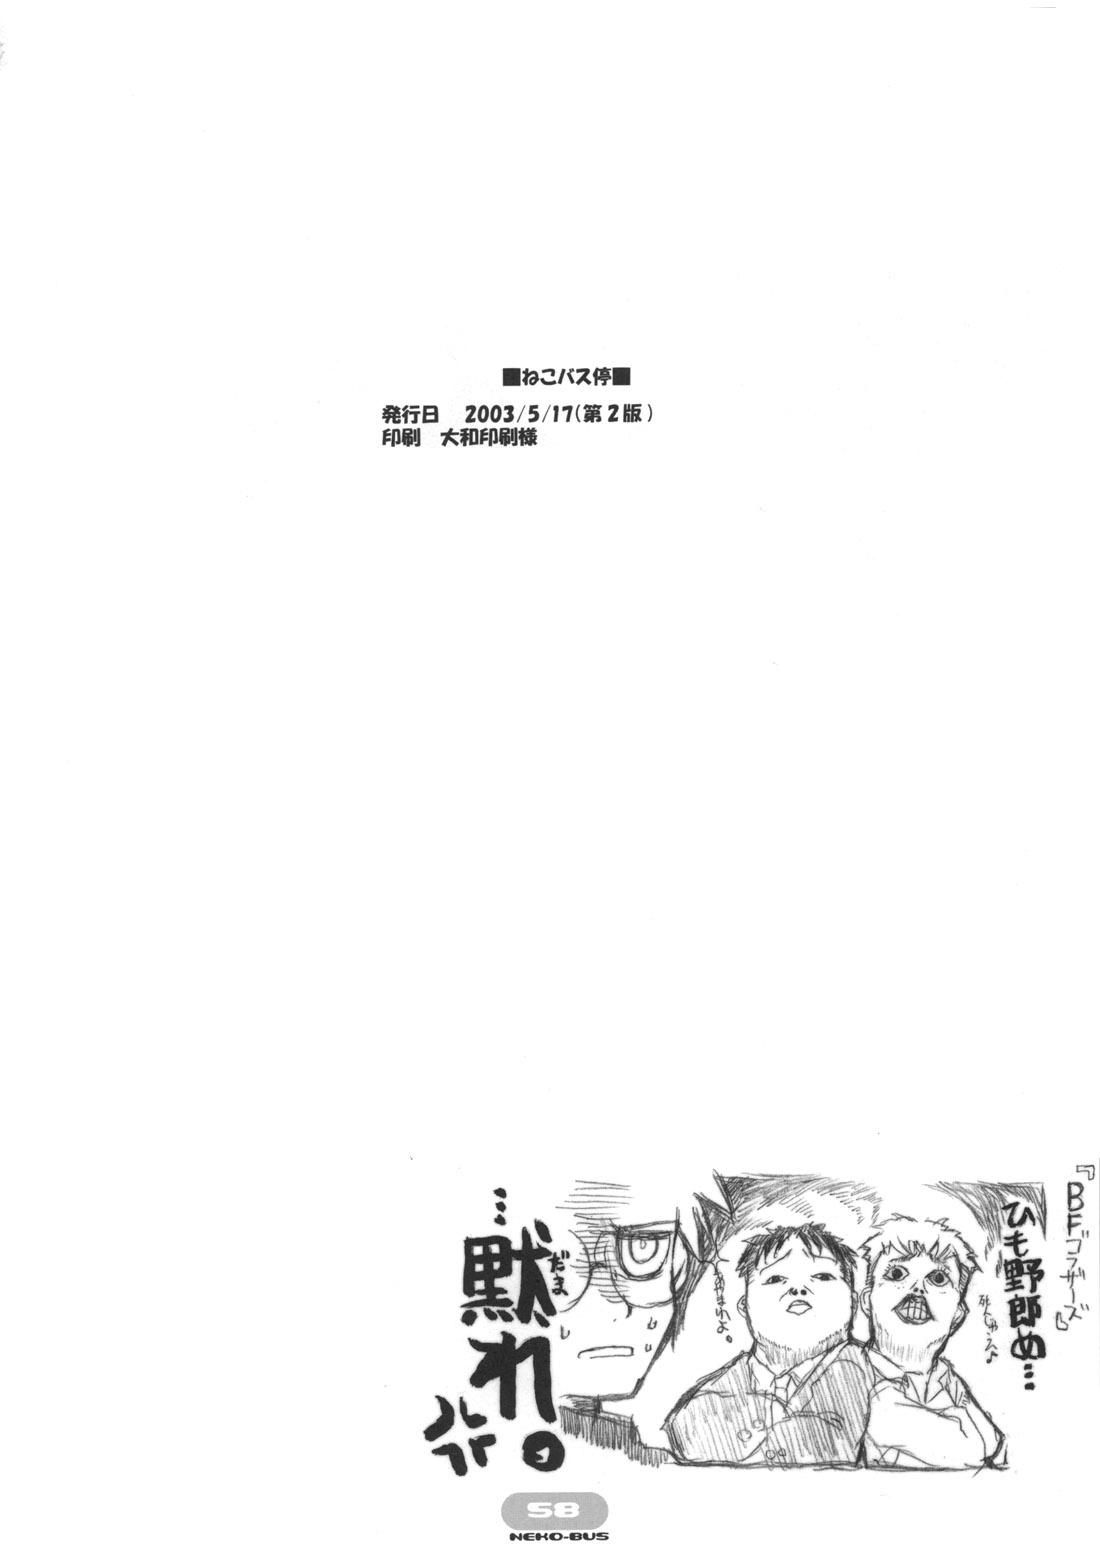 Men Neko-bus Tei no Hon vol.5 - Tsukihime Verga - Page 58